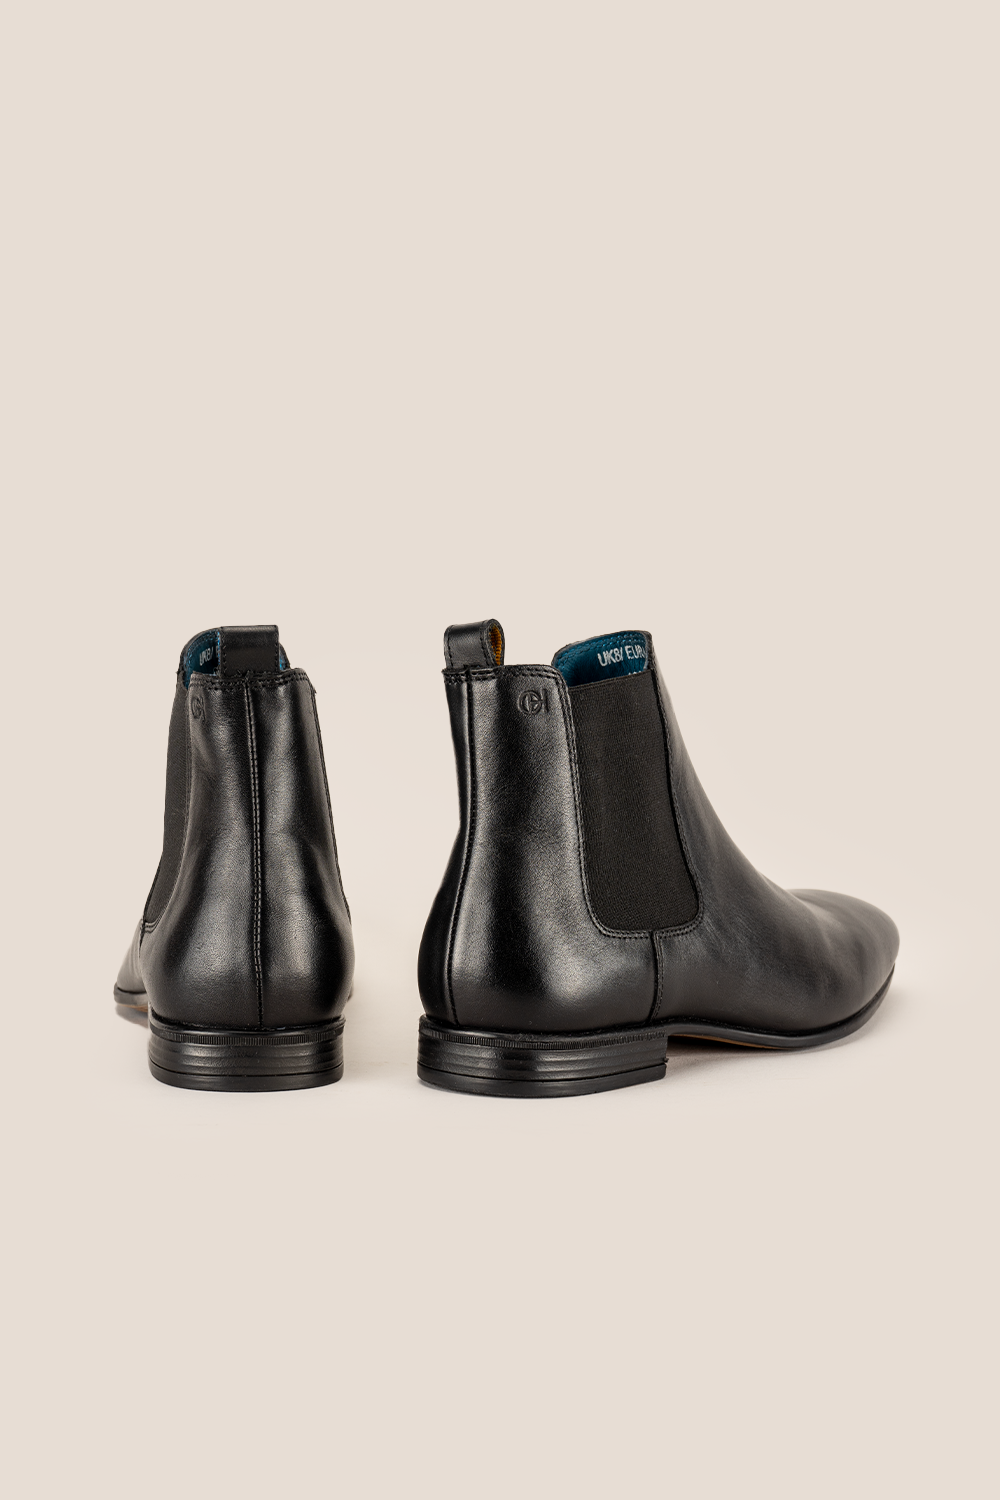 Oswin Hyde Darwin Black boots for Men